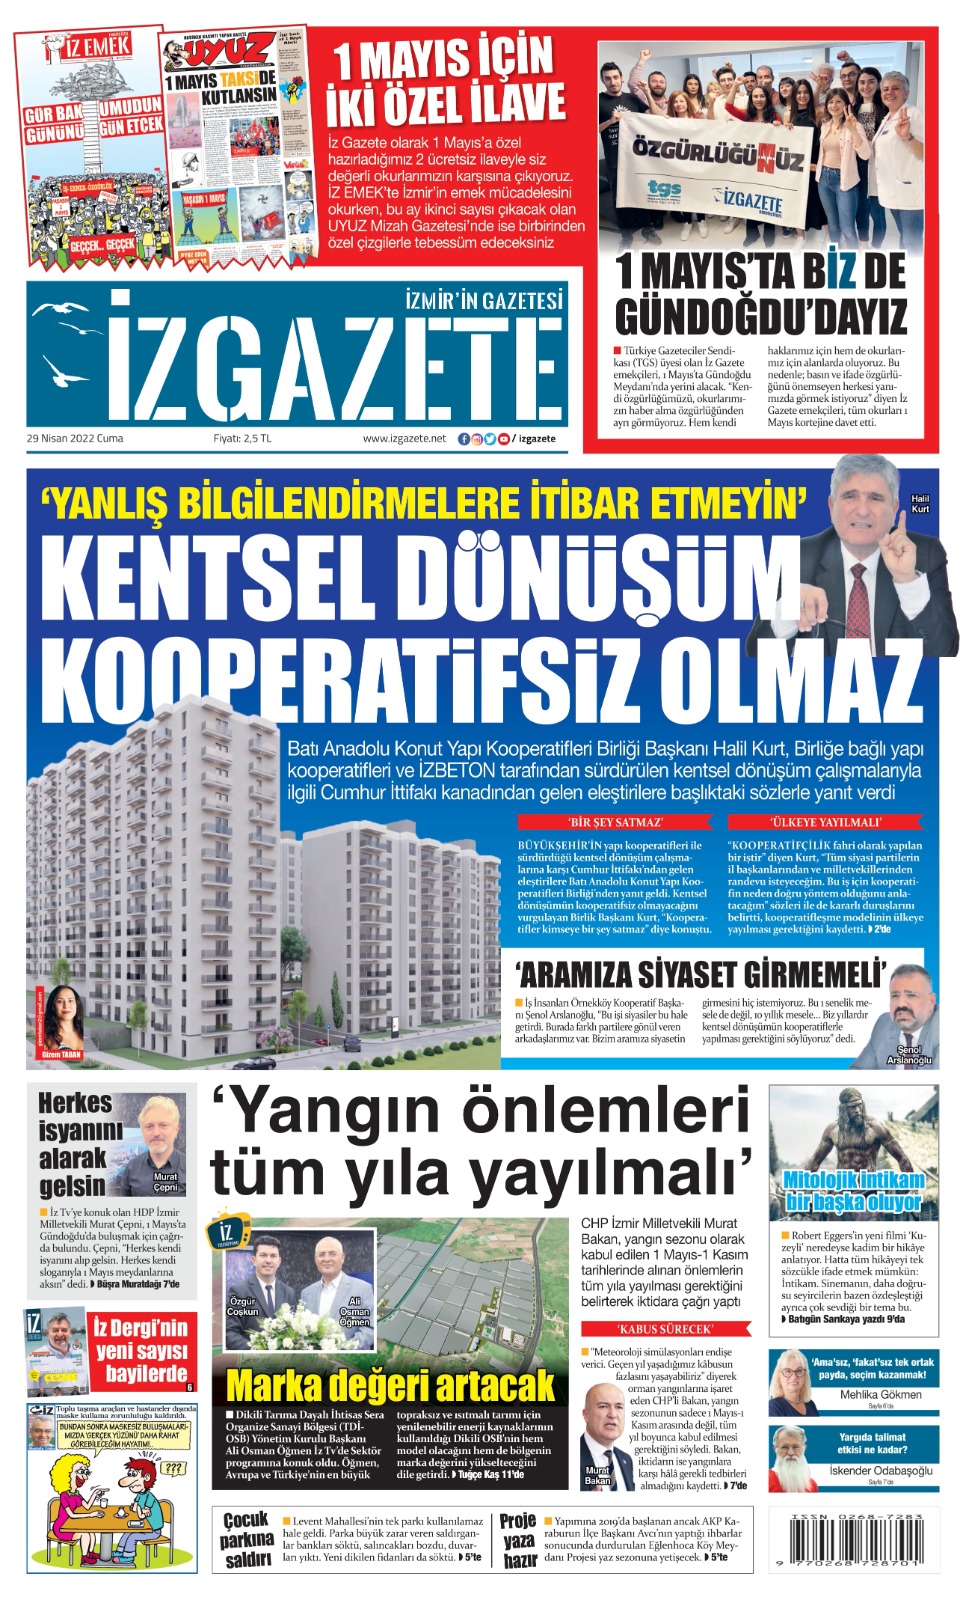 İz Gazete - İzmir'in Gazetesi - 29.04.2022 Manşeti